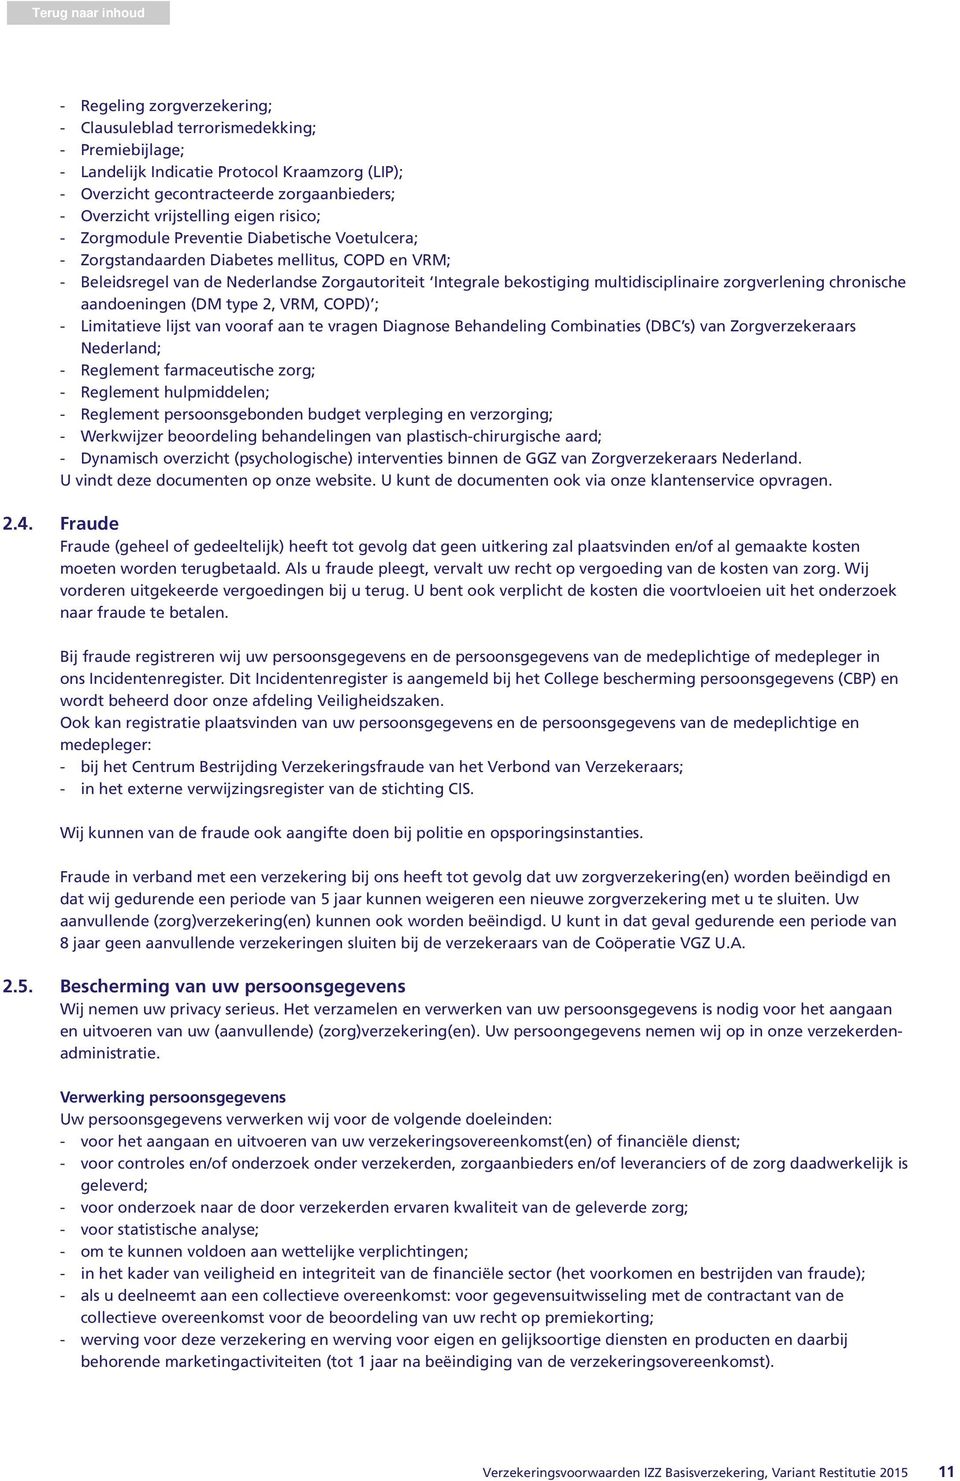 multidisciplinaire zorgverlening chronische aandoeningen (DM type 2, VRM, COPD) ; - Limitatieve lijst van vooraf aan te vragen Diagnose Behandeling Combinaties (DBC s) van Zorgverzekeraars Nederland;